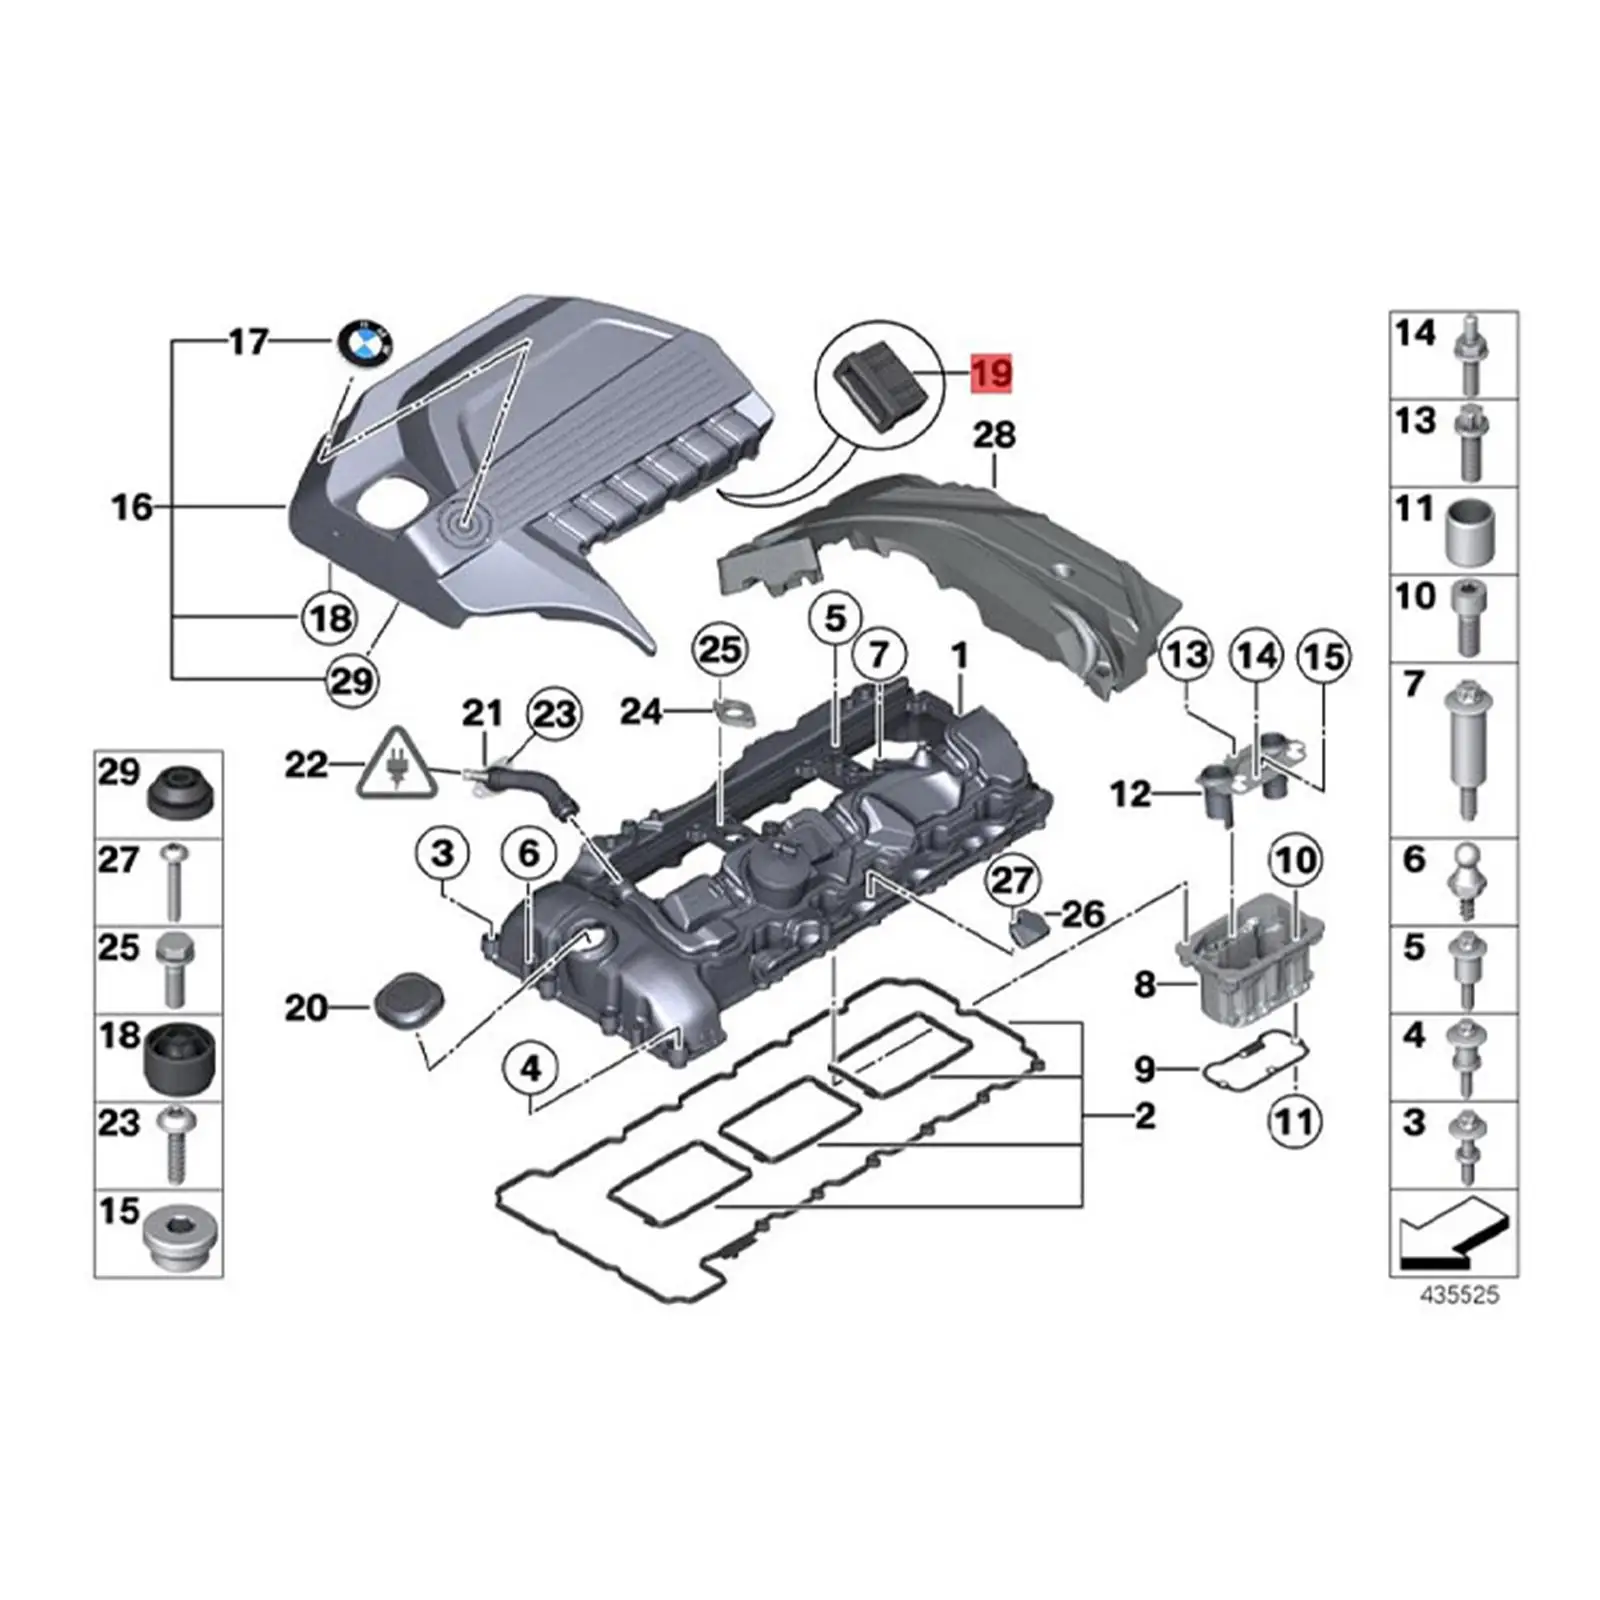 Radiator Upper Rubber Mount Repair Parts 17111712911 for BMW E32 735i E32 750il E34 530i E38 750il E32 740il